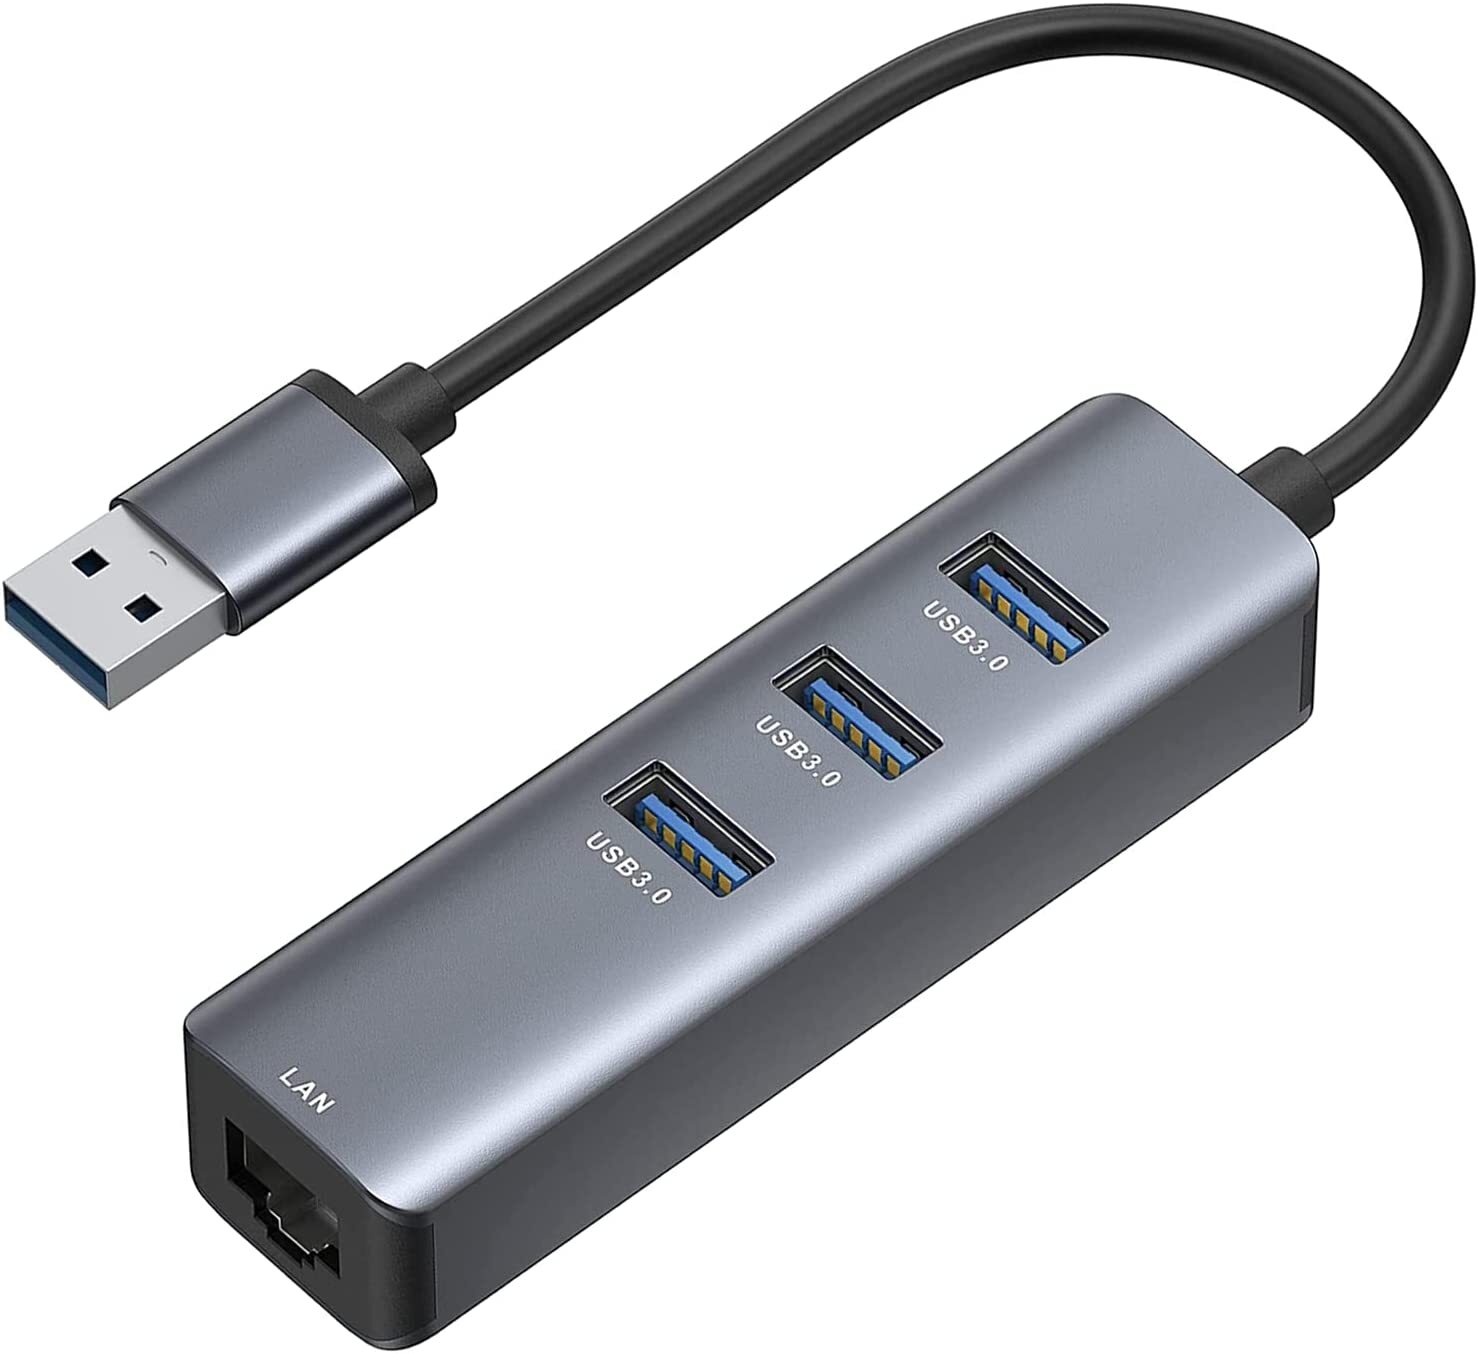 USB to Ethernet Adapter, cakitte RJ45 10/100/1000 Gigabit Ethernet